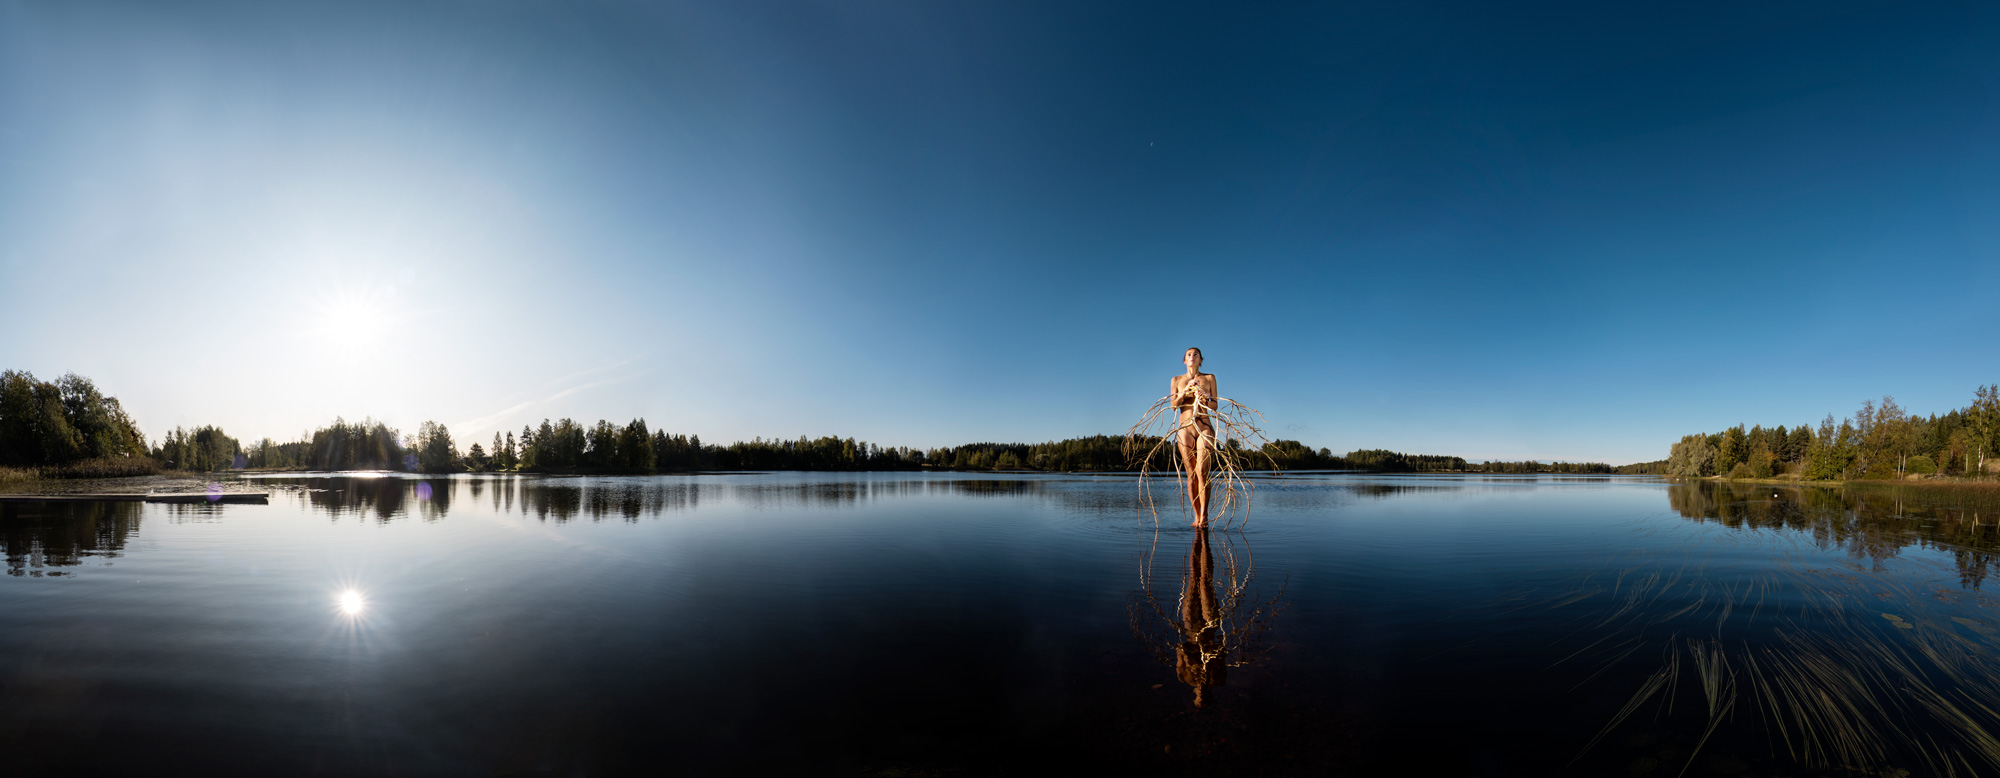 KÄÄNNA JUURI IX. Fotografía y retoque digital. Lago Mustianoja, Hämeenkyrö, Finlandia